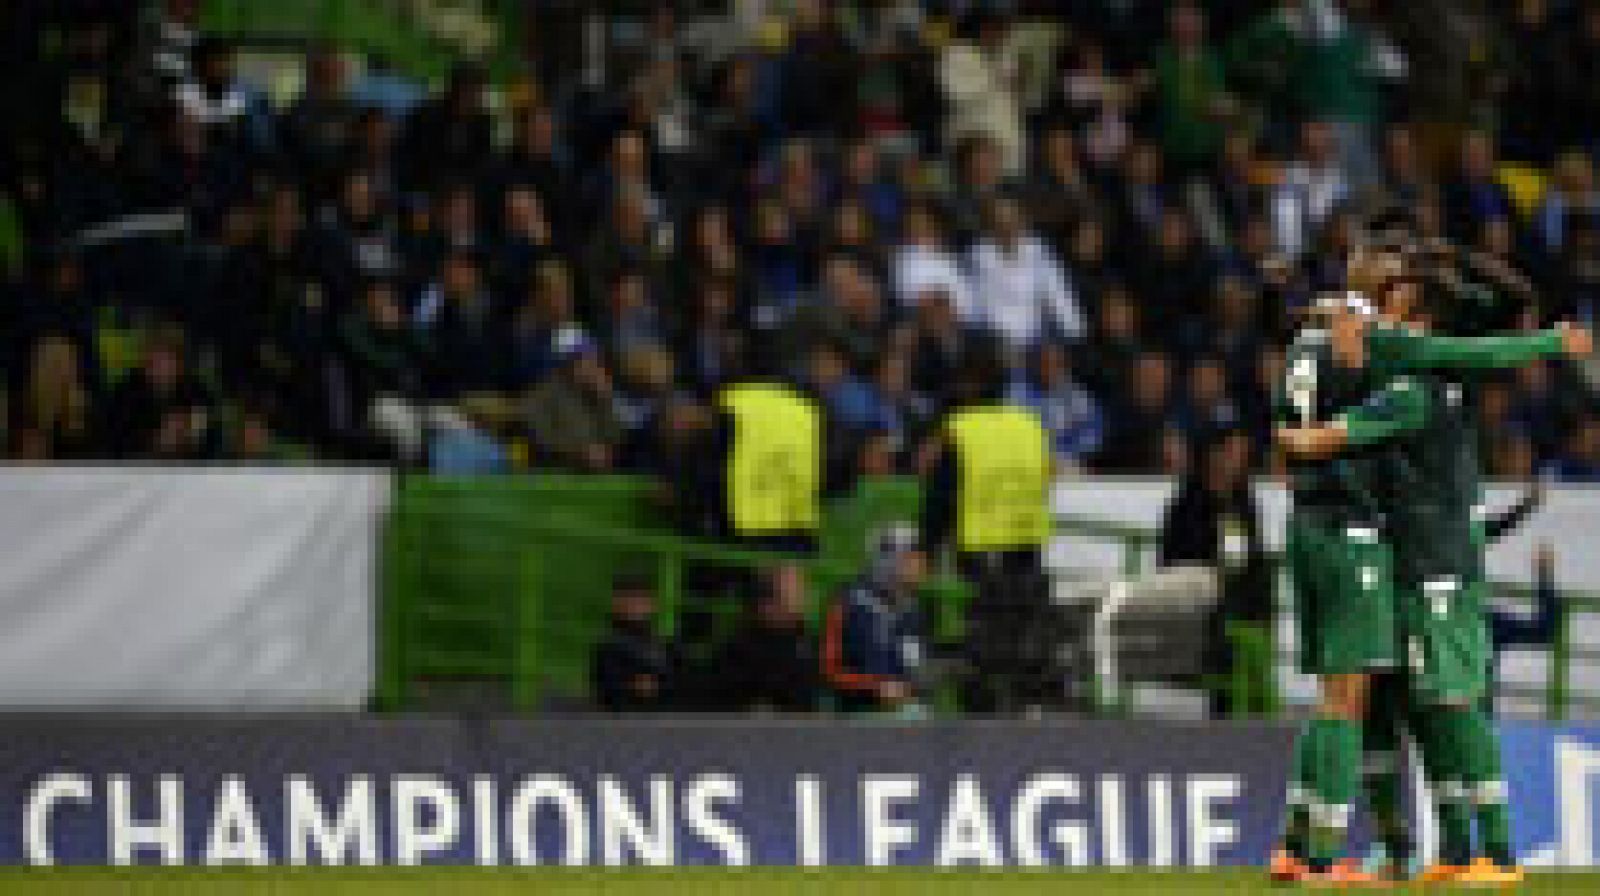 Al son de la clase de Nani, el Sporting de Lisboa remontó al Schalke 04 (4-2) y logró su primera victoria en esta edición de la Liga de Campeones, la que le permite entrar en la pugna por los octavos de final.